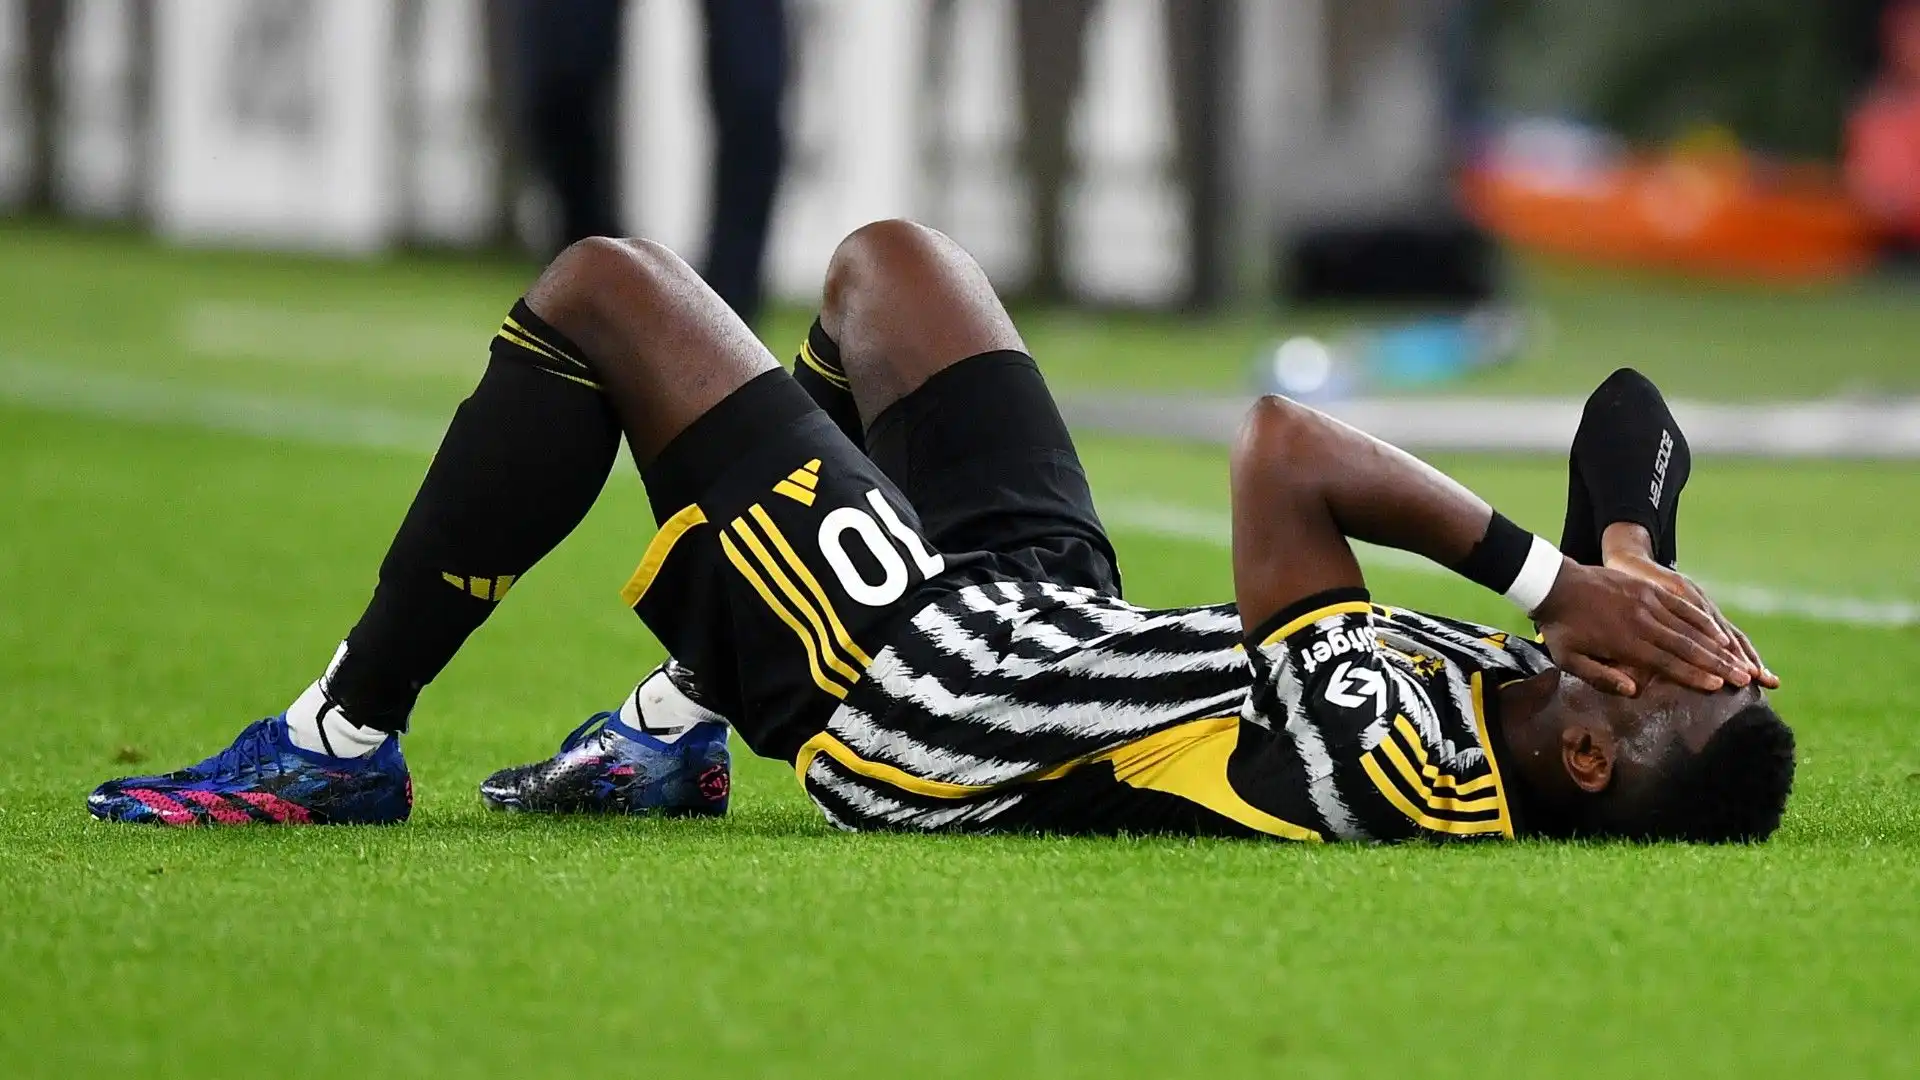 Tornato alla Juventus nel 2022, Pogba ha dimostrato una certa fragilità fisica